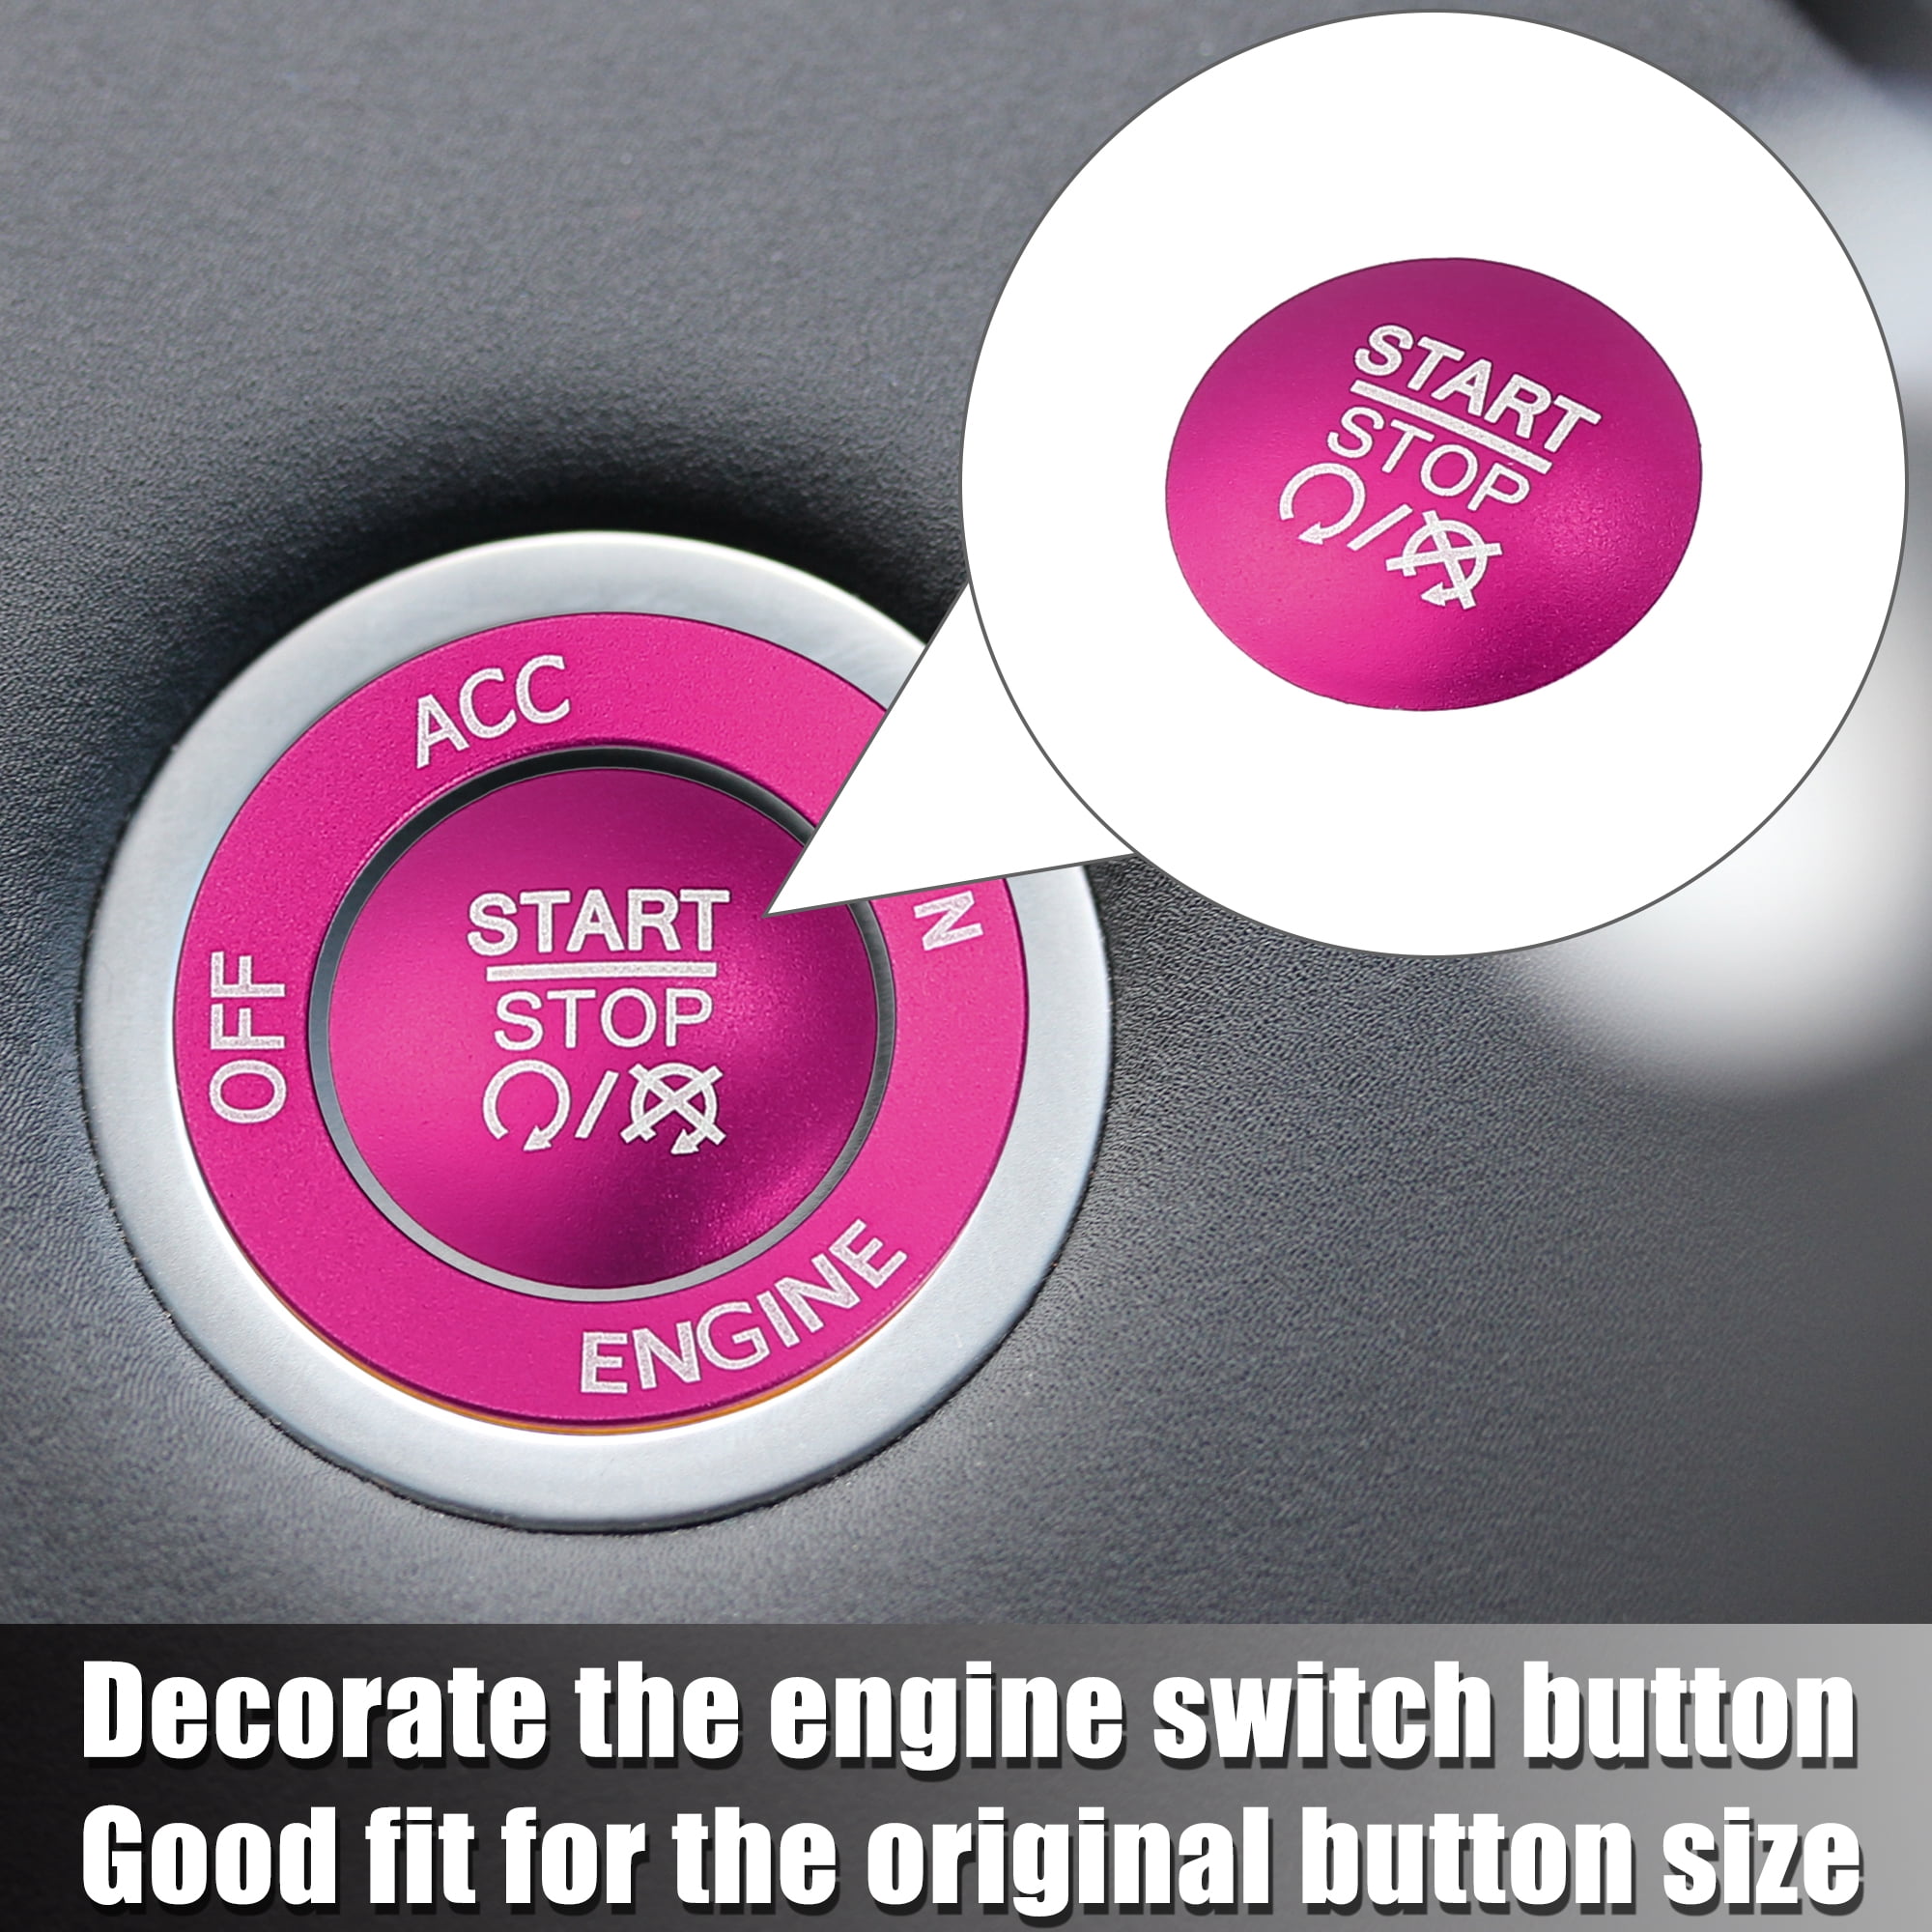 Unique Bargains Engine Start Stop Button Cover Trim Sticker Kit